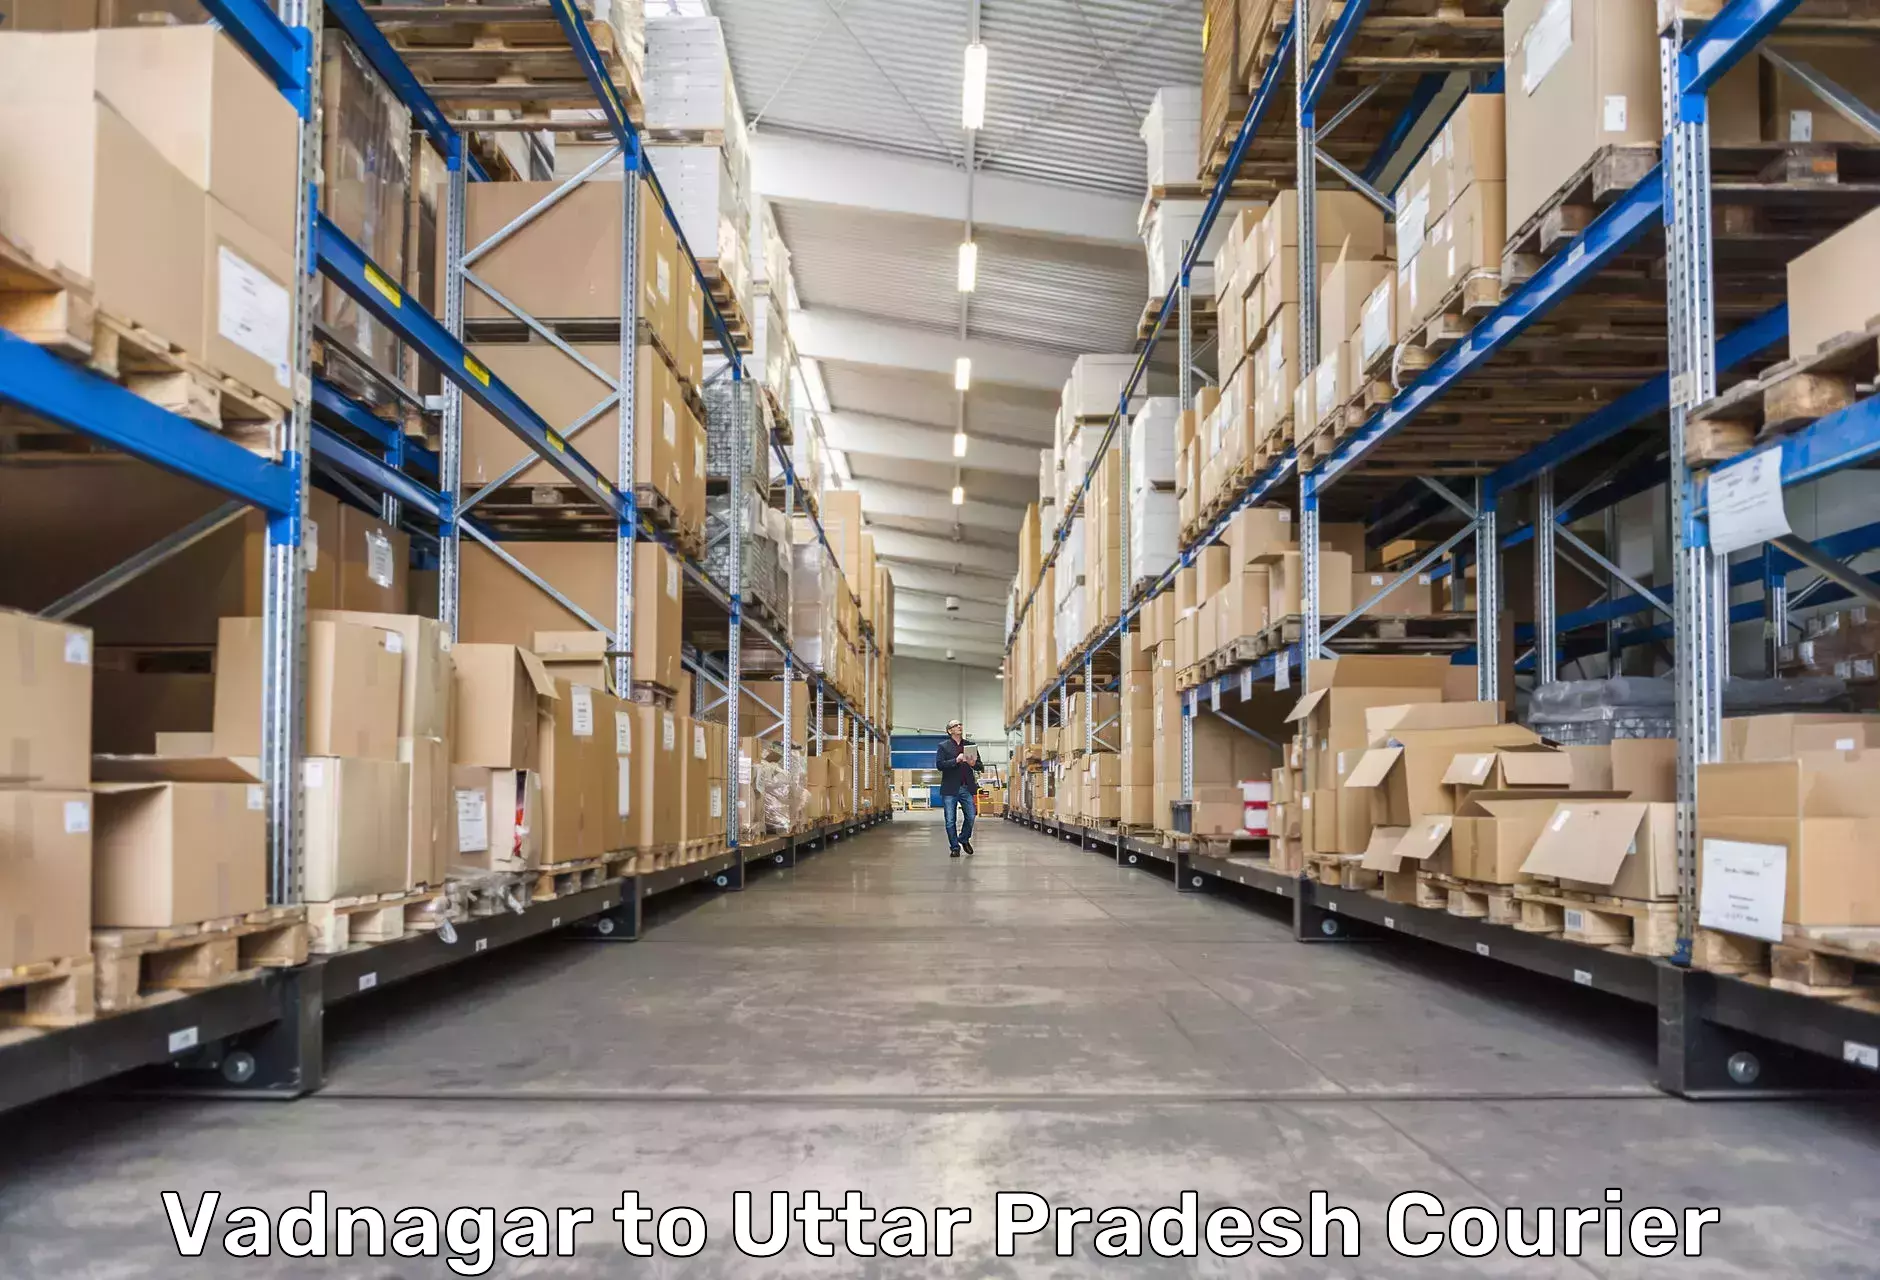 Multi-national courier services Vadnagar to Uttar Pradesh